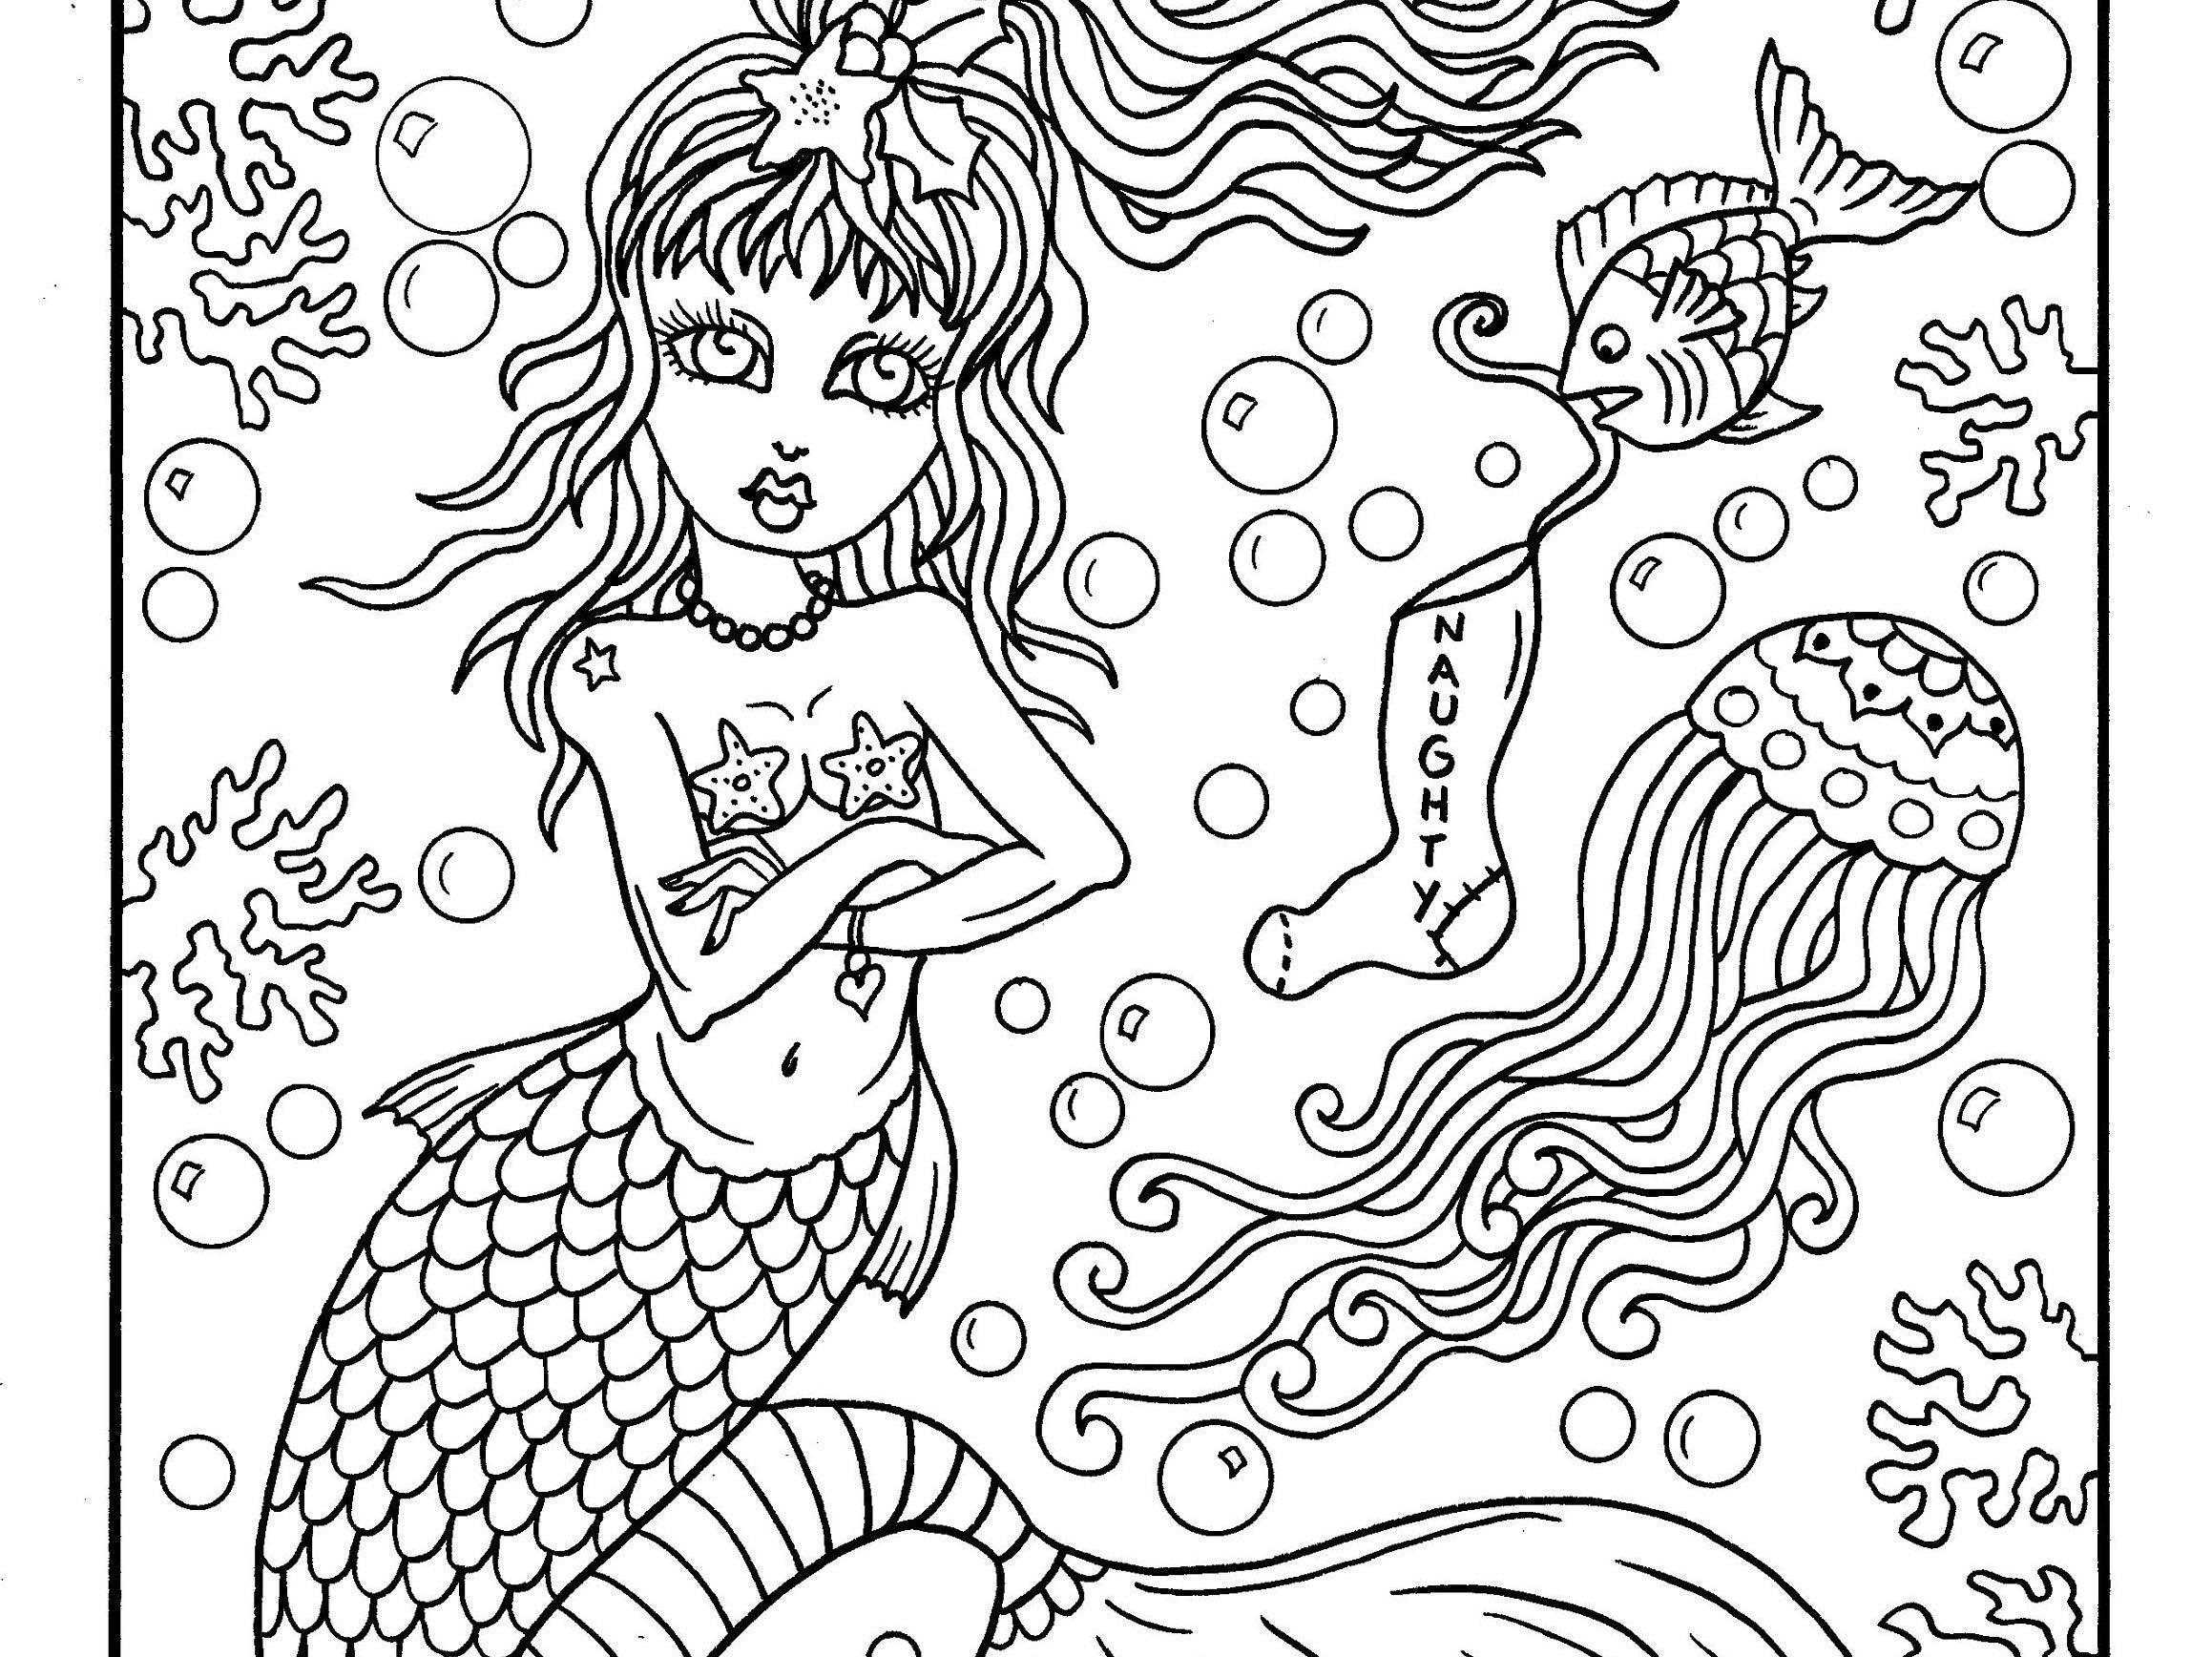 A Merry Mermaid Christmas Digital Coloring Book. Printable - Etsy UK